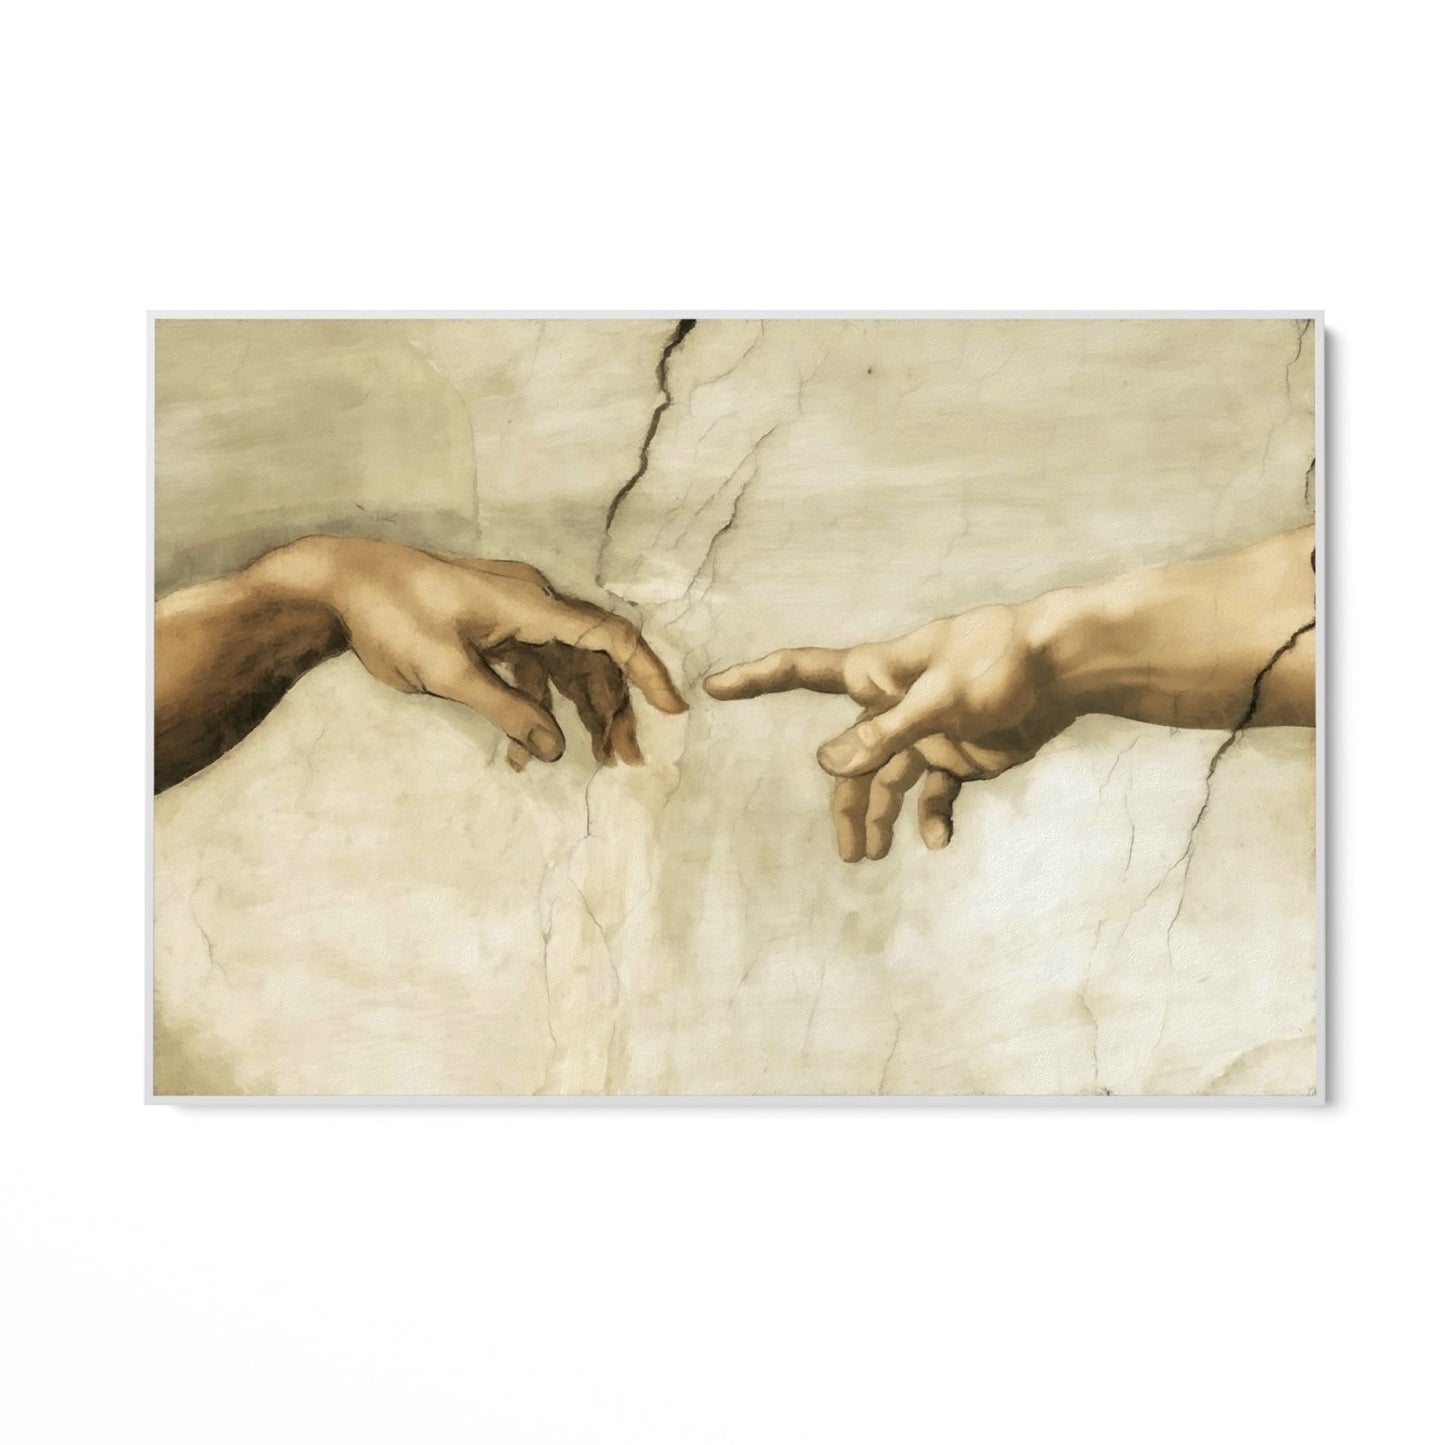 Le mani di Michelangelo